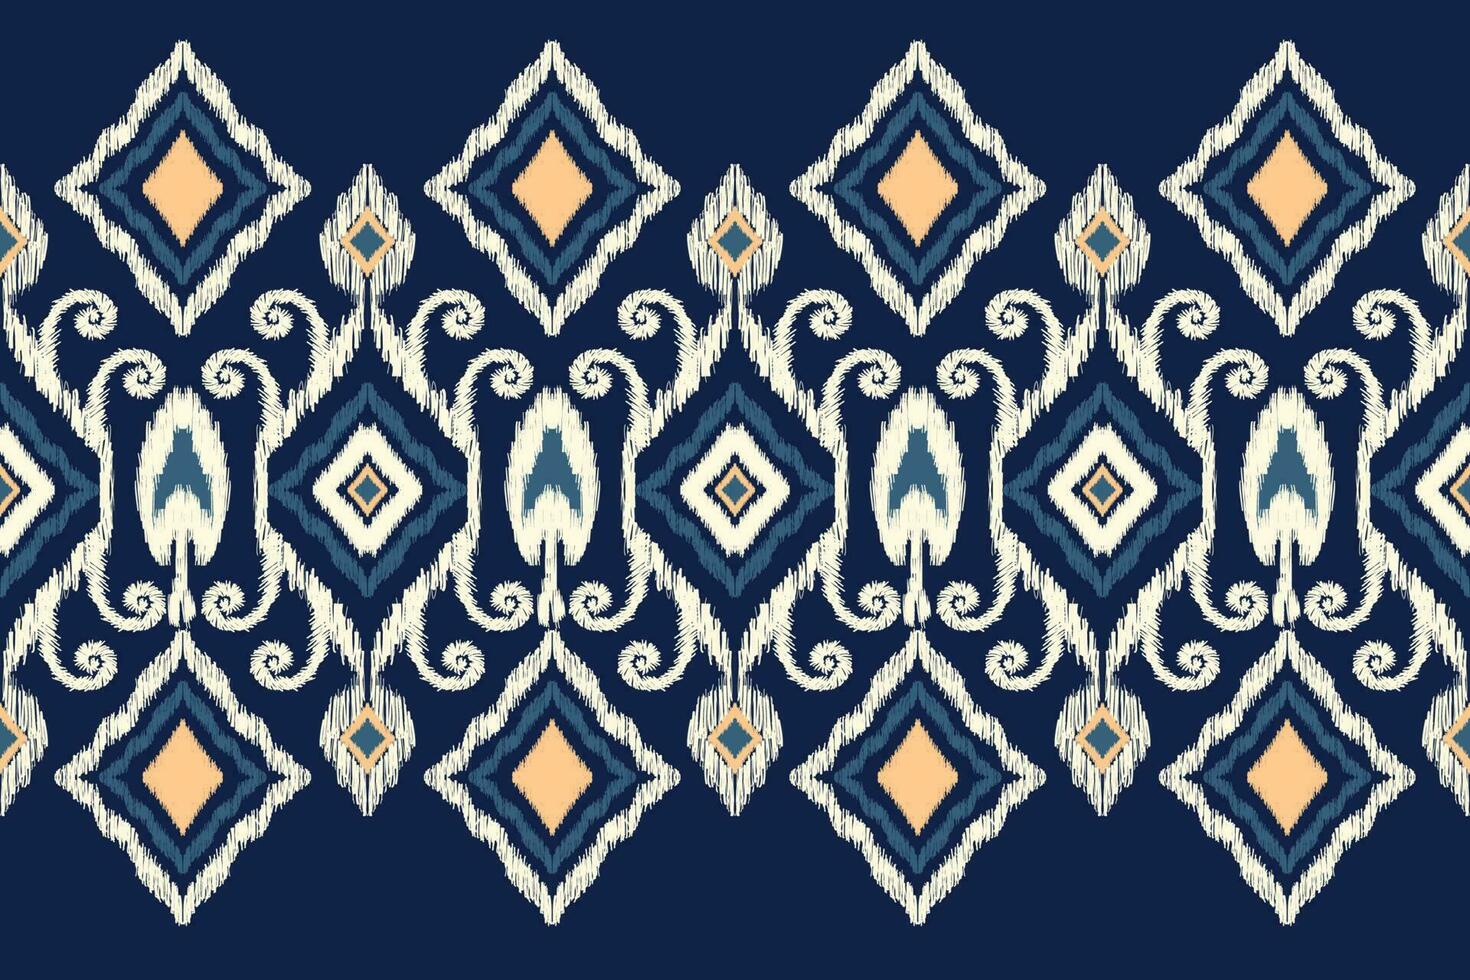 africano ikat floral paisley bordado em marinha azul plano de fundo.ikkat étnico oriental padronizar tradicional.asteca estilo abstrato vetor ilustração.design para textura,tecido,vestuário,embrulho,decoração